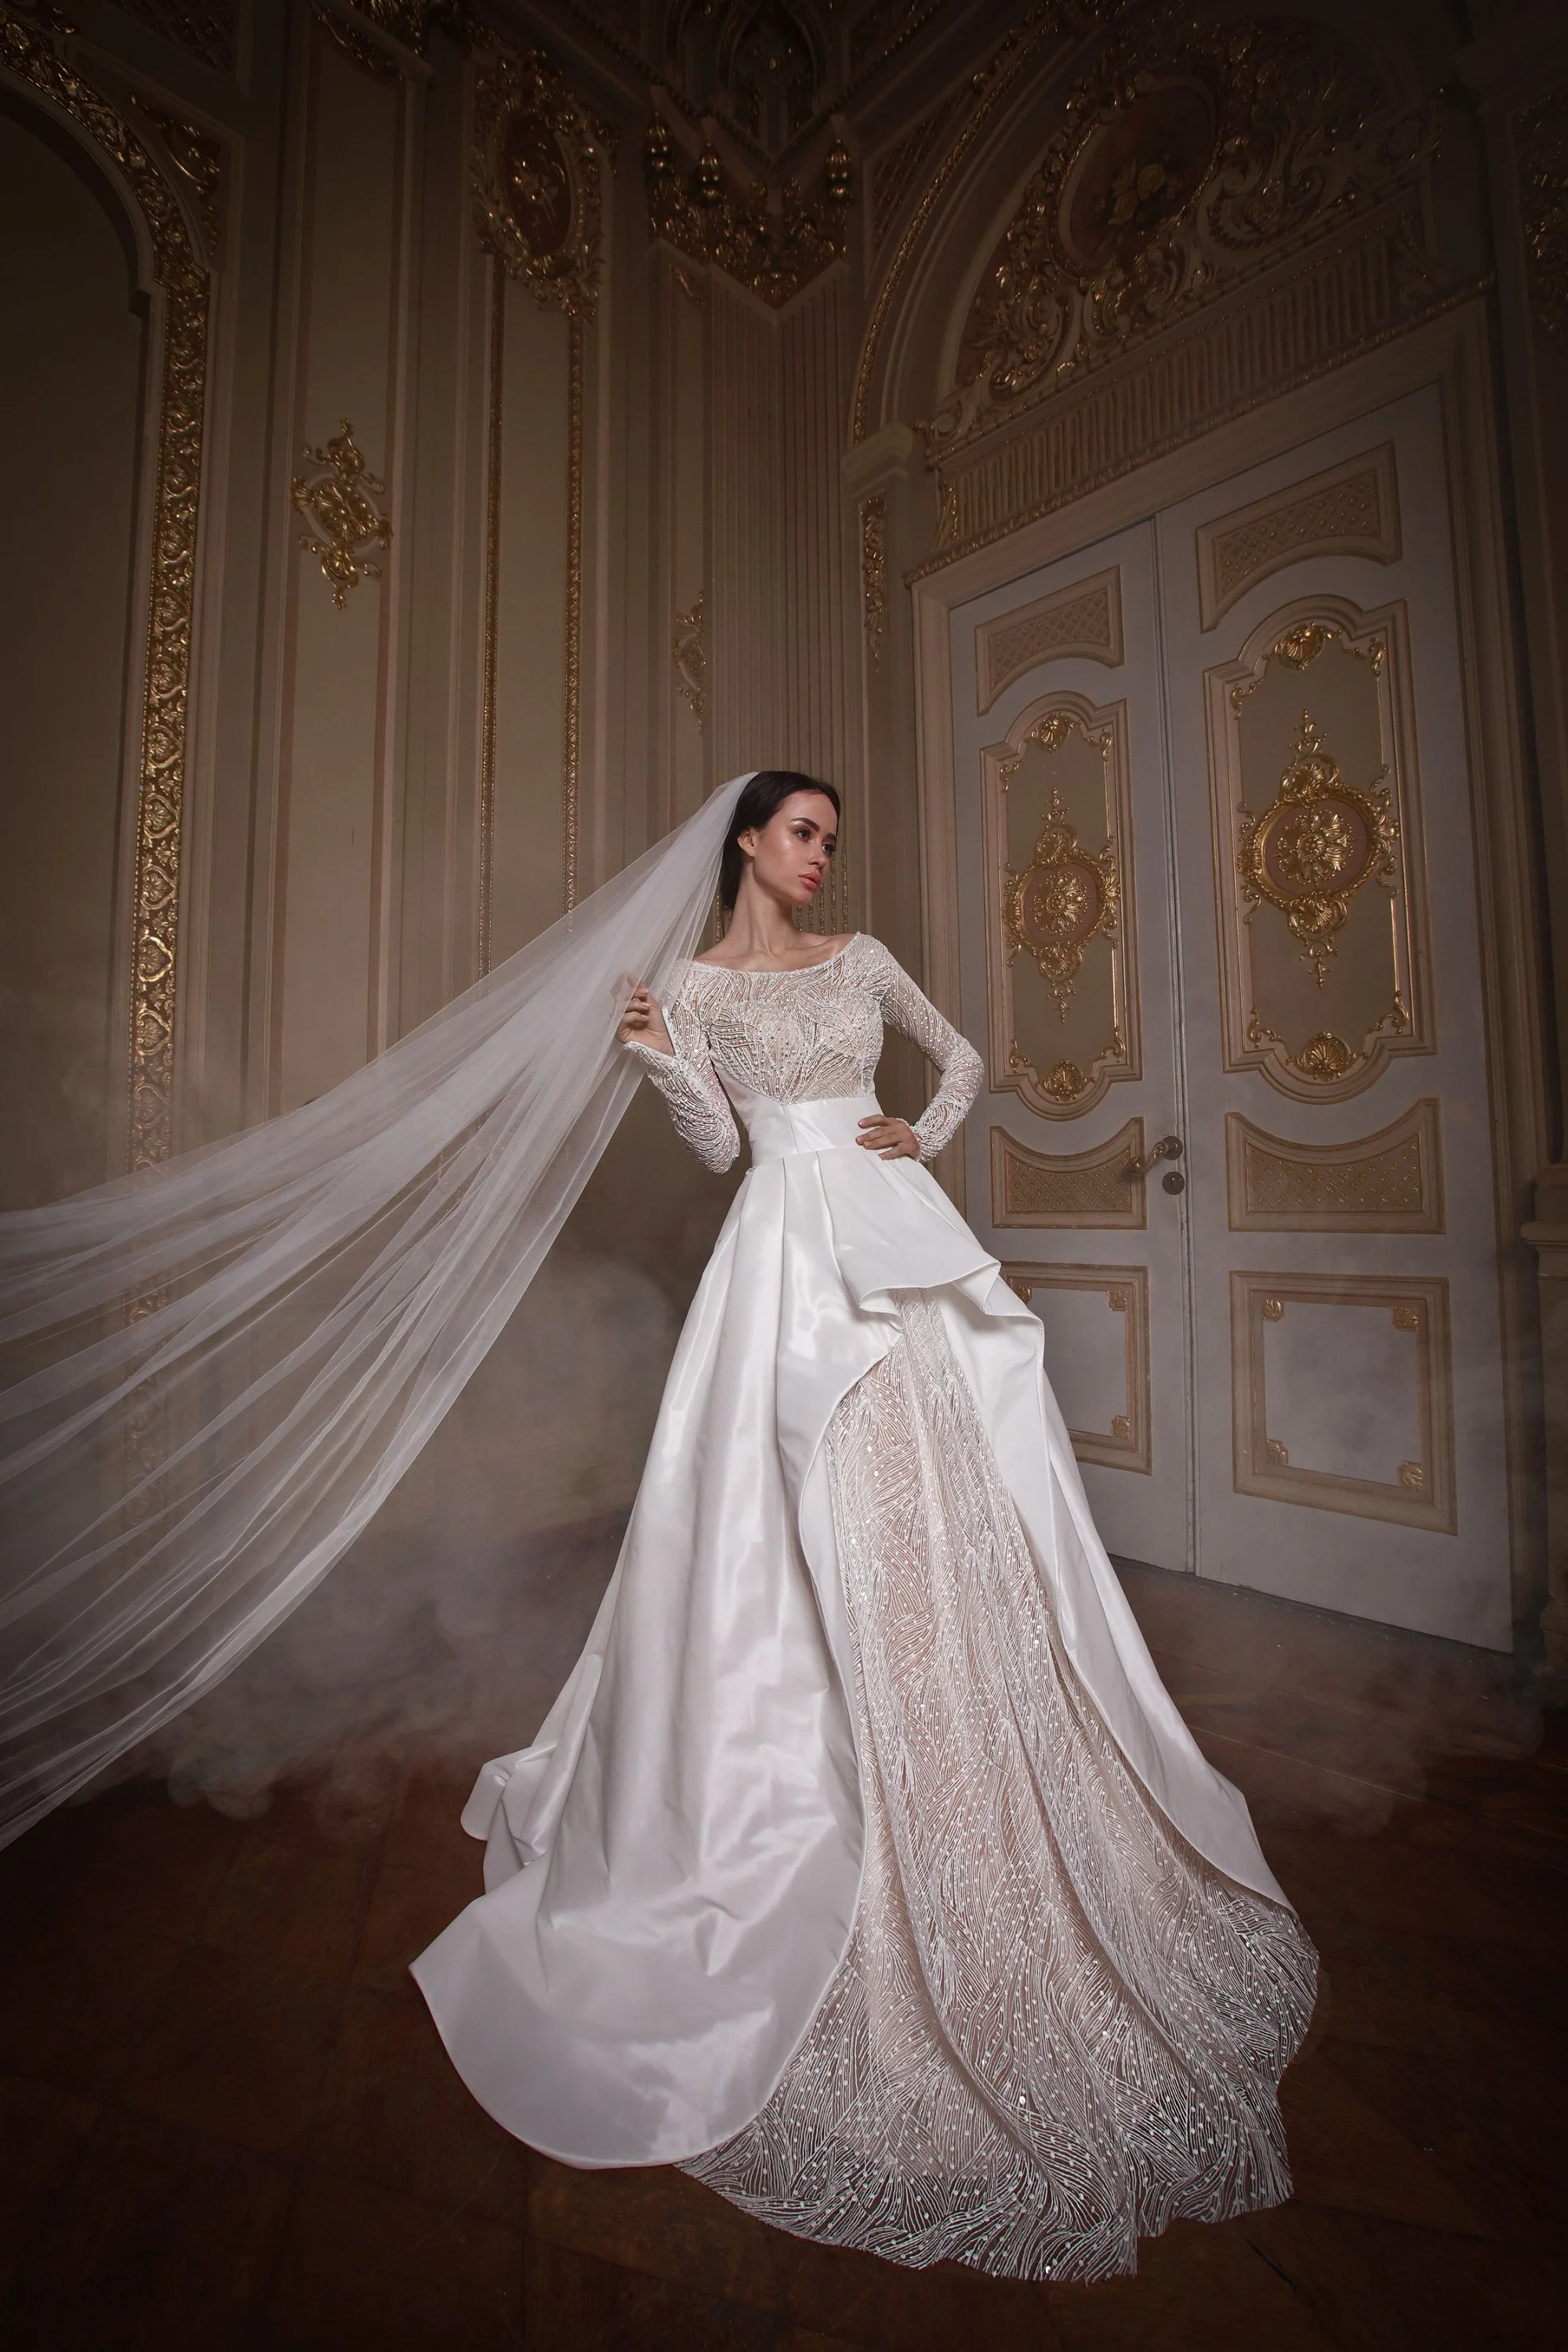 Злата Огневич и Анна Буткевич примеряли роскошные свадебные платья от Андре Тана - фото 425444